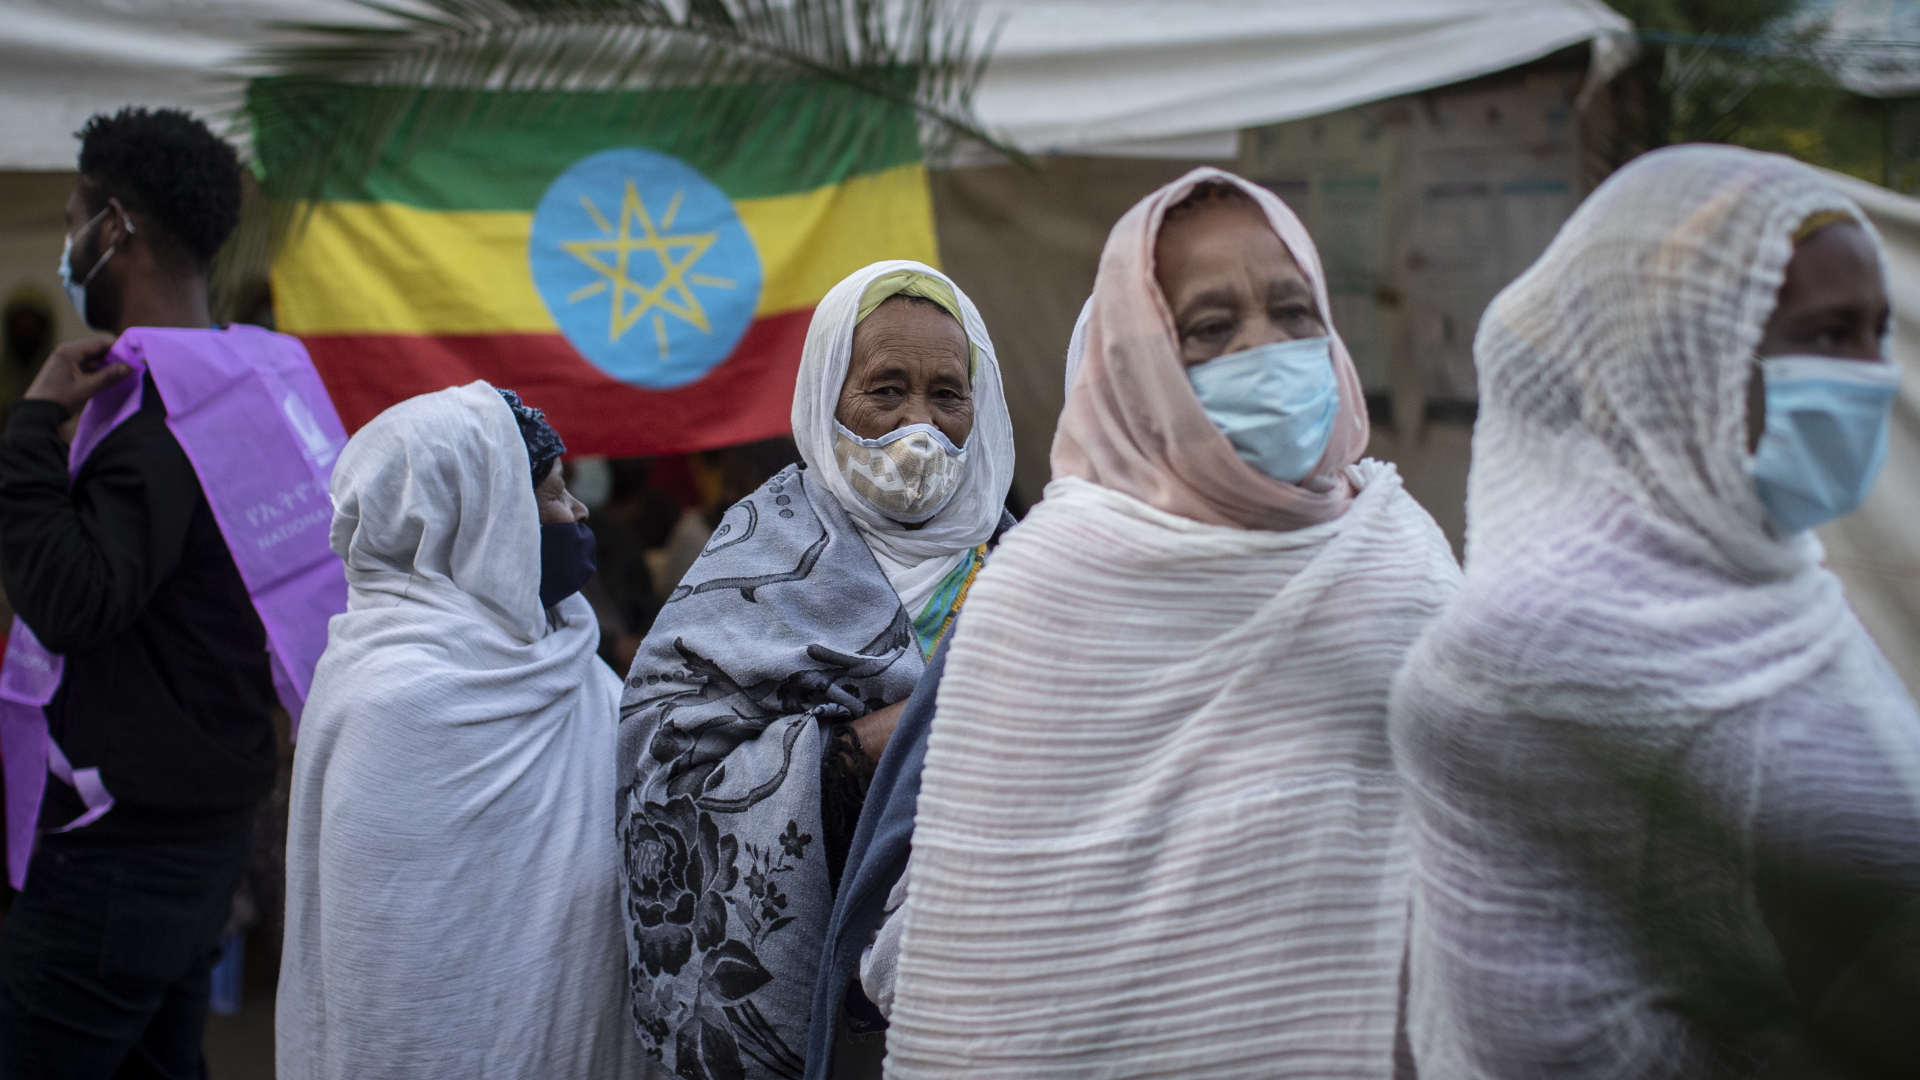 Frauen vor Wahllokal in Äthiopien | dpa